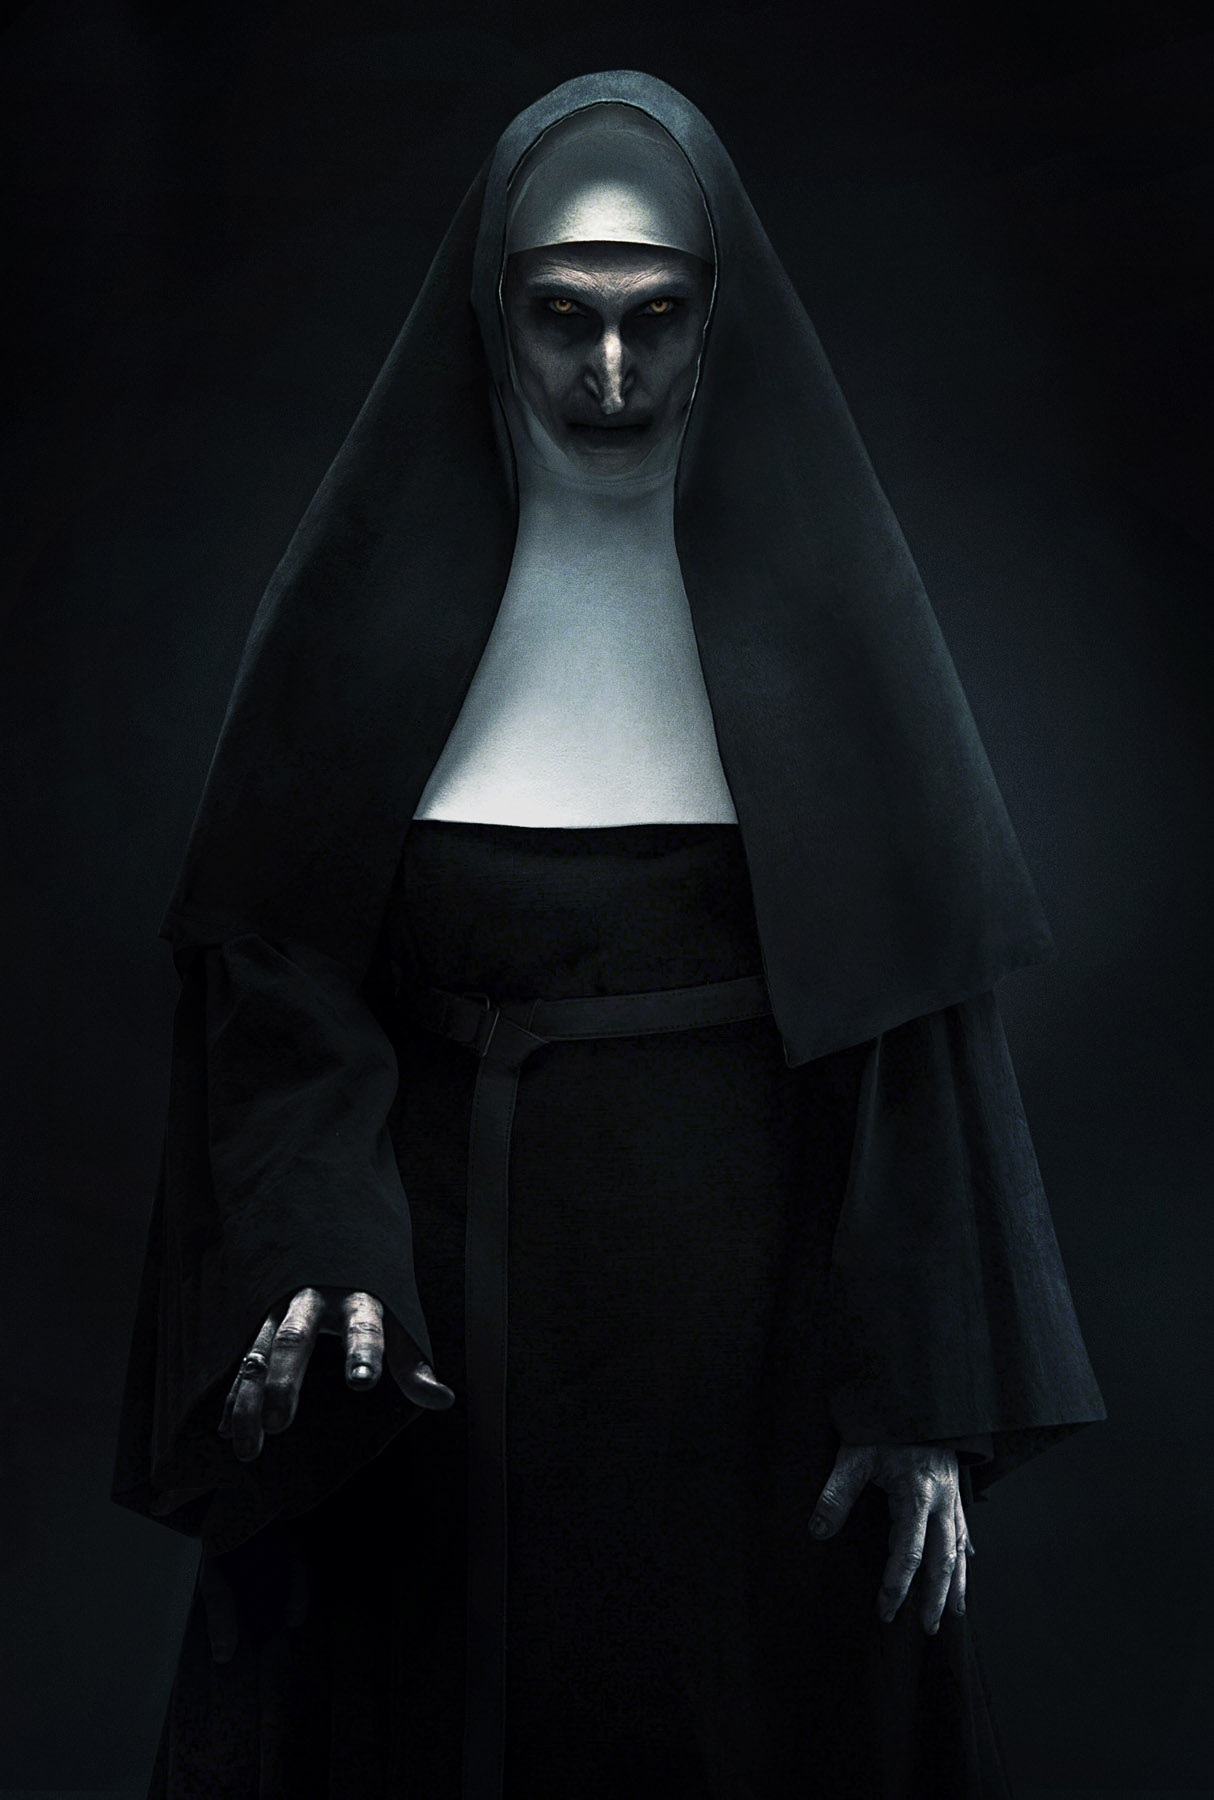 filme da freira demoníaca de invocação do mal ganha primeira foto